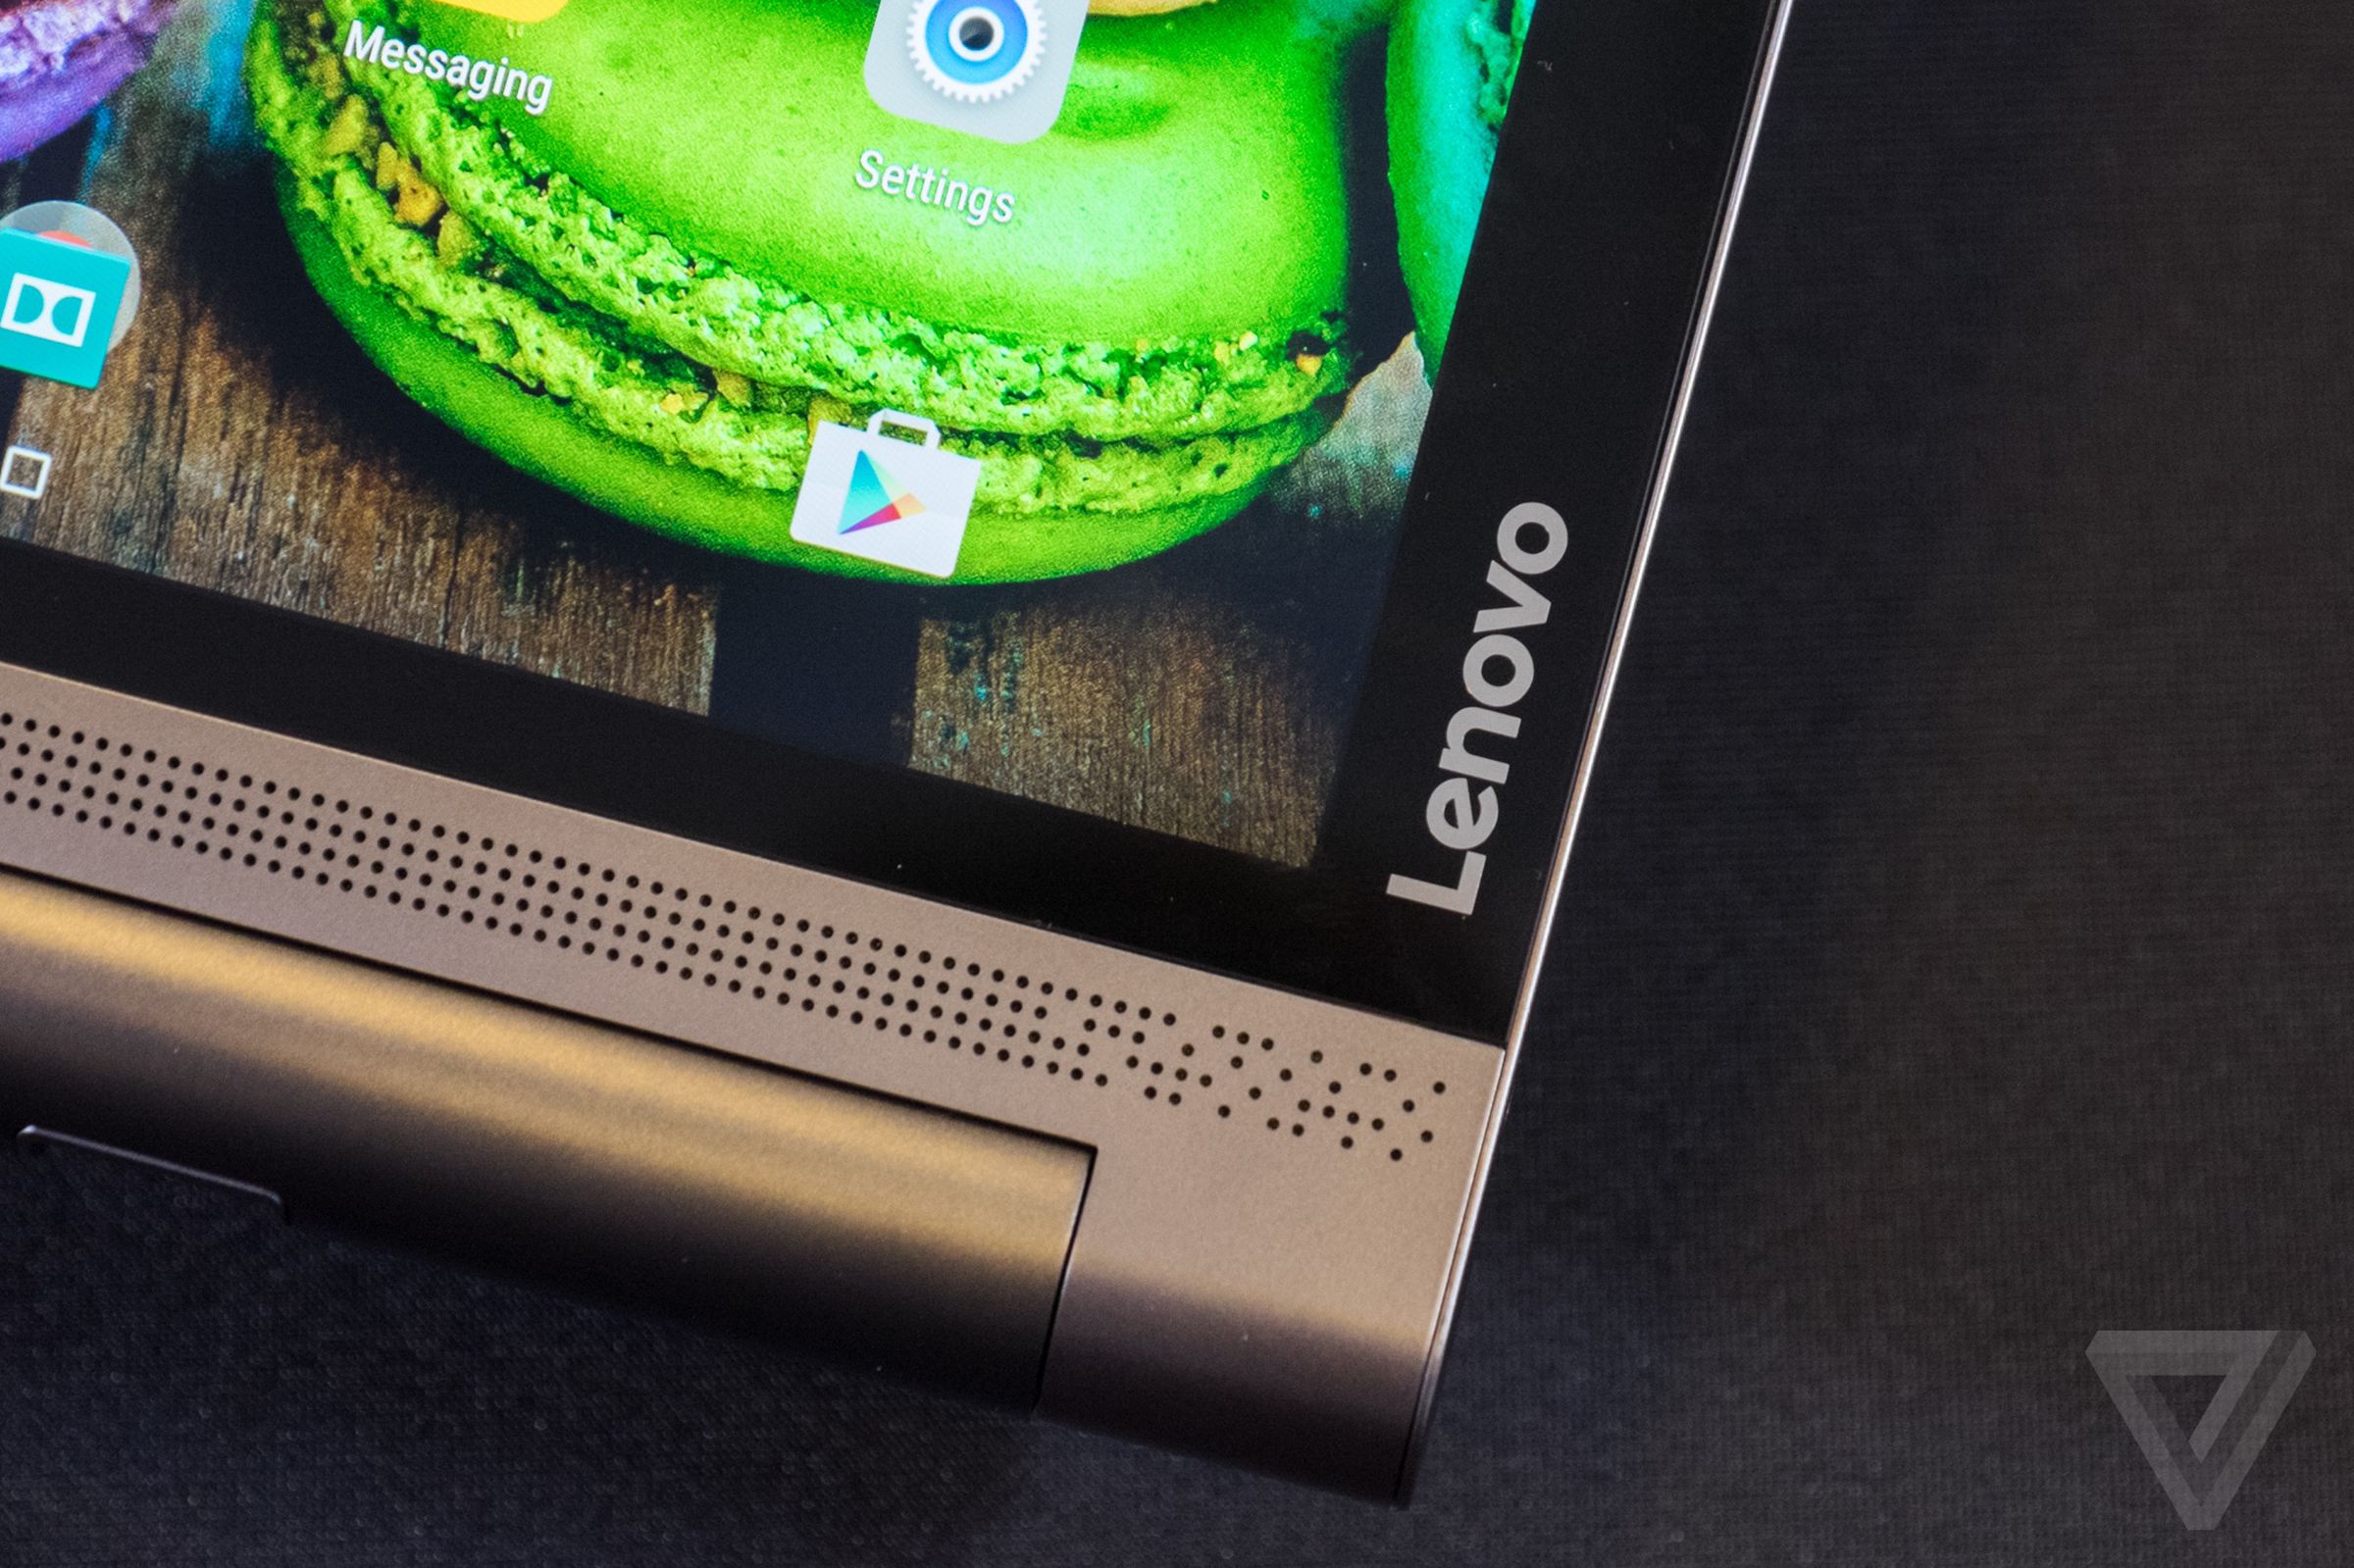 Lenovo Yoga Tab 3 and Yoga Tab 3 Pro hands-on photos